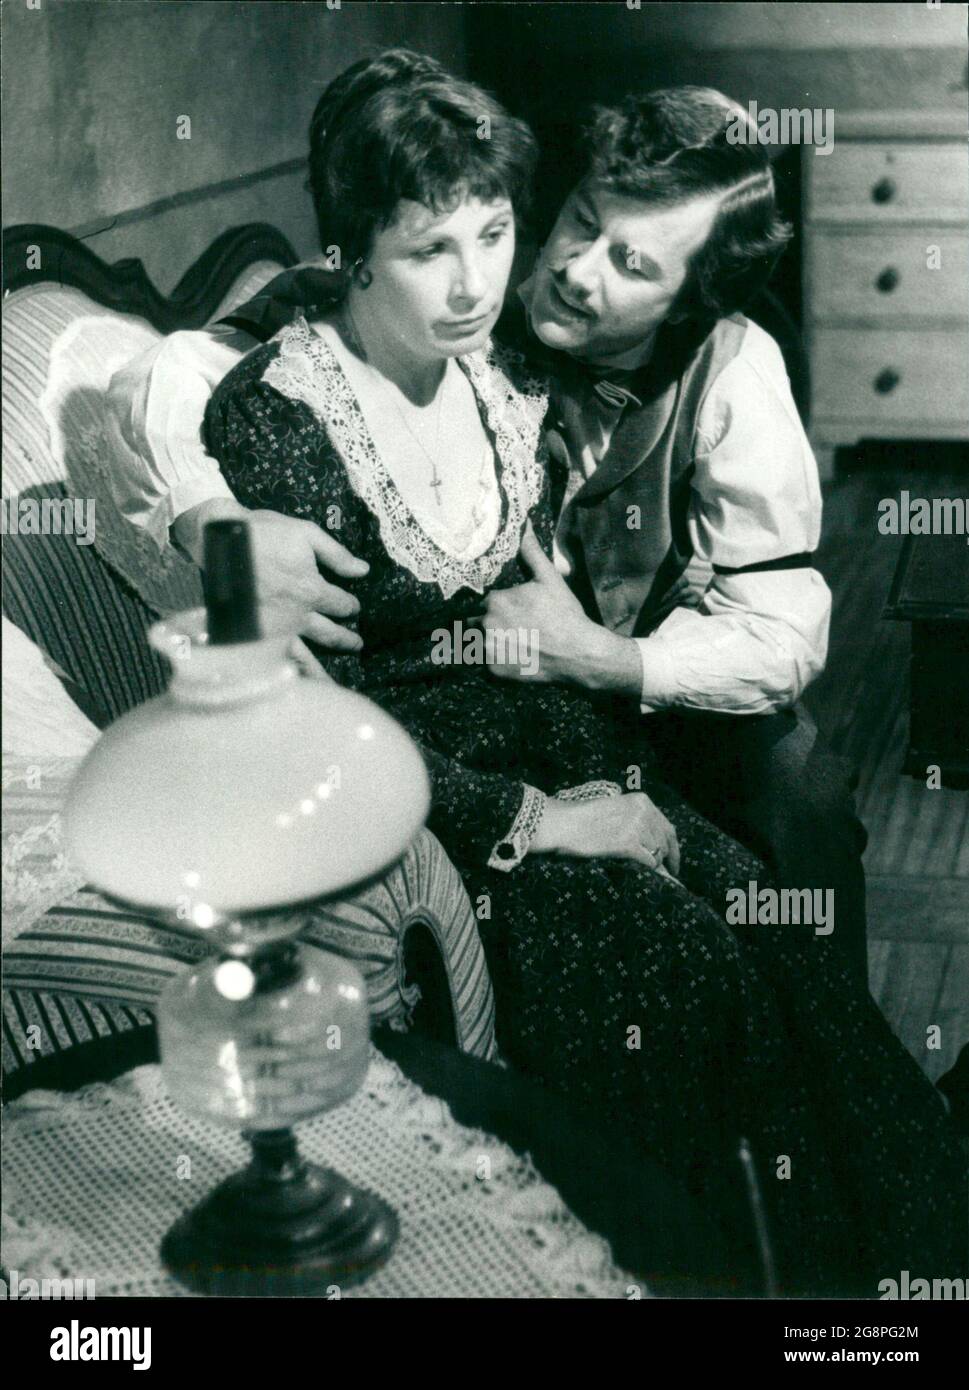 Kaum am Ziel ihres Ehrgeizes, Frau Henschel zu werden, betrügt Hanne (Astrid Kube) ihren Mann mit dem Kellner Georg (Michael Schwarzmaier). Stock Photo